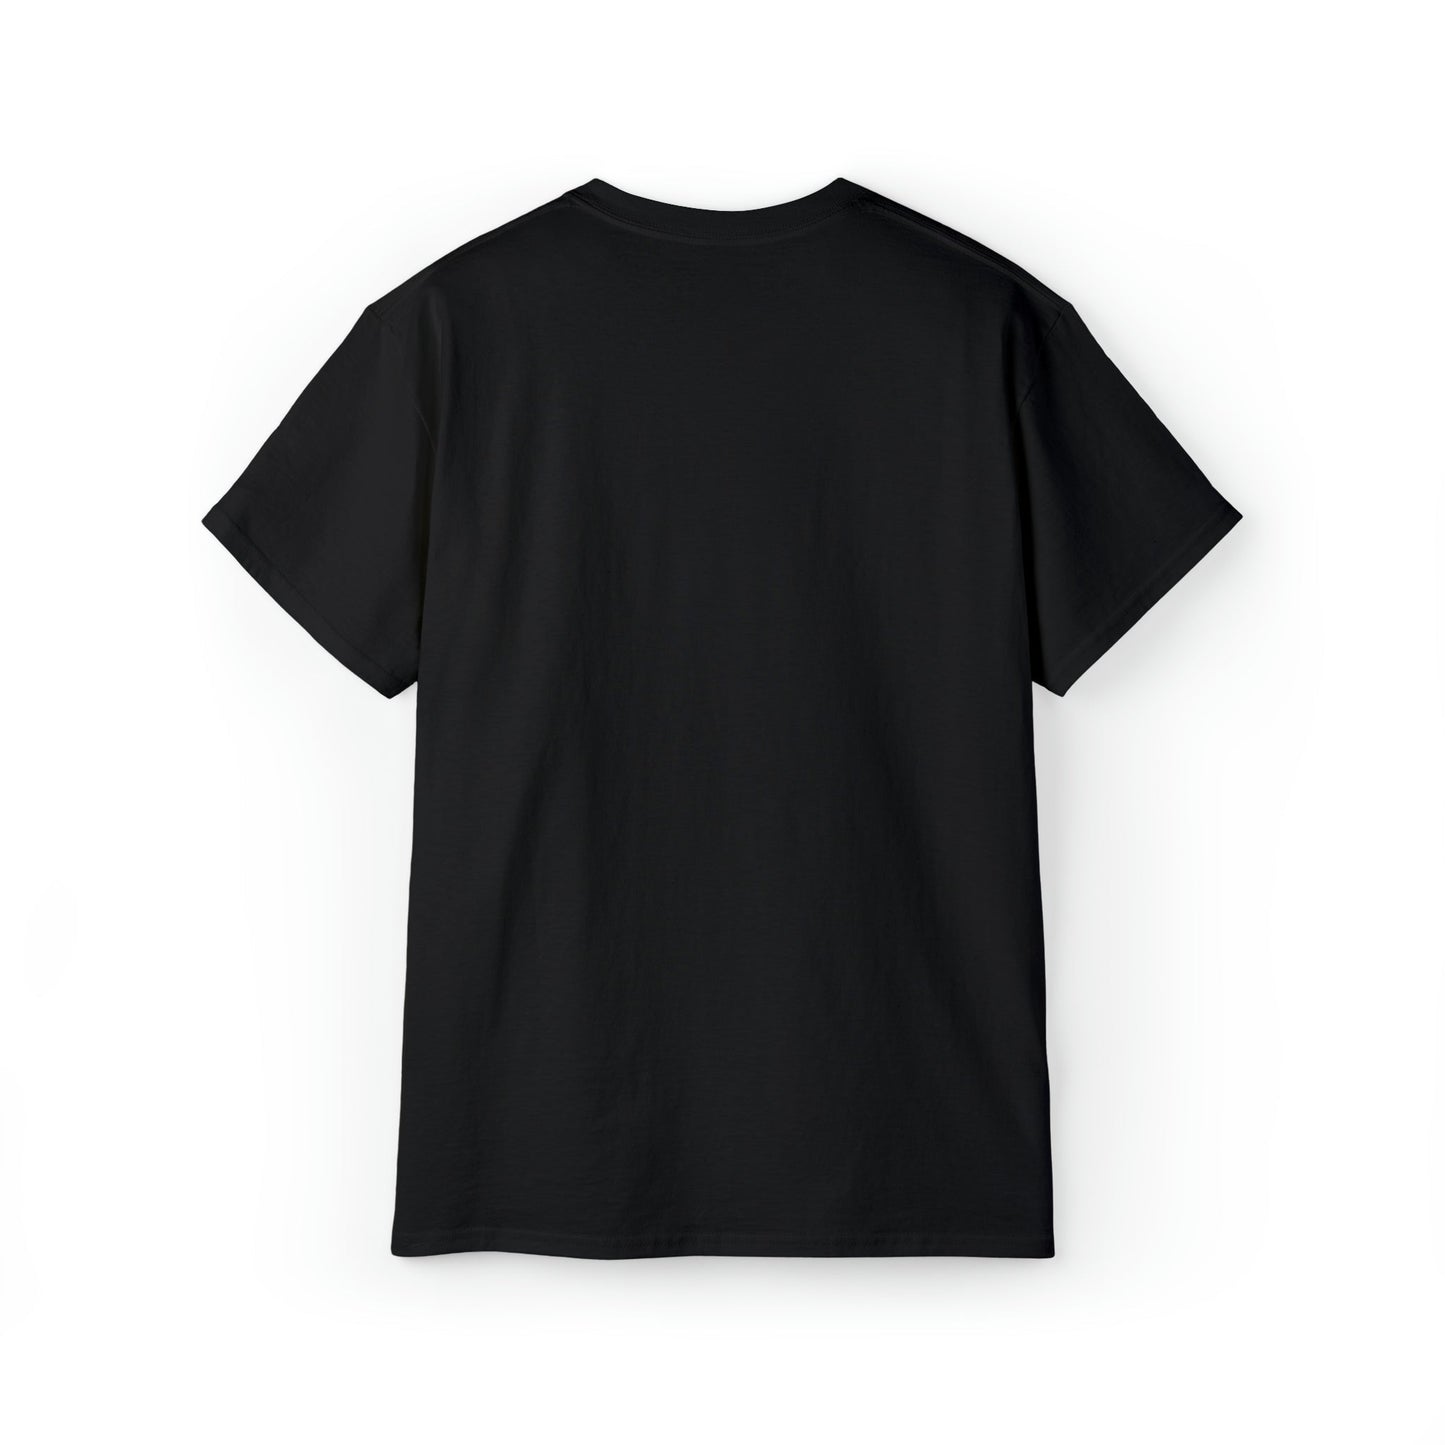 Printify T-Shirt Dagaz Rune V.K.N.G™ T-shirt